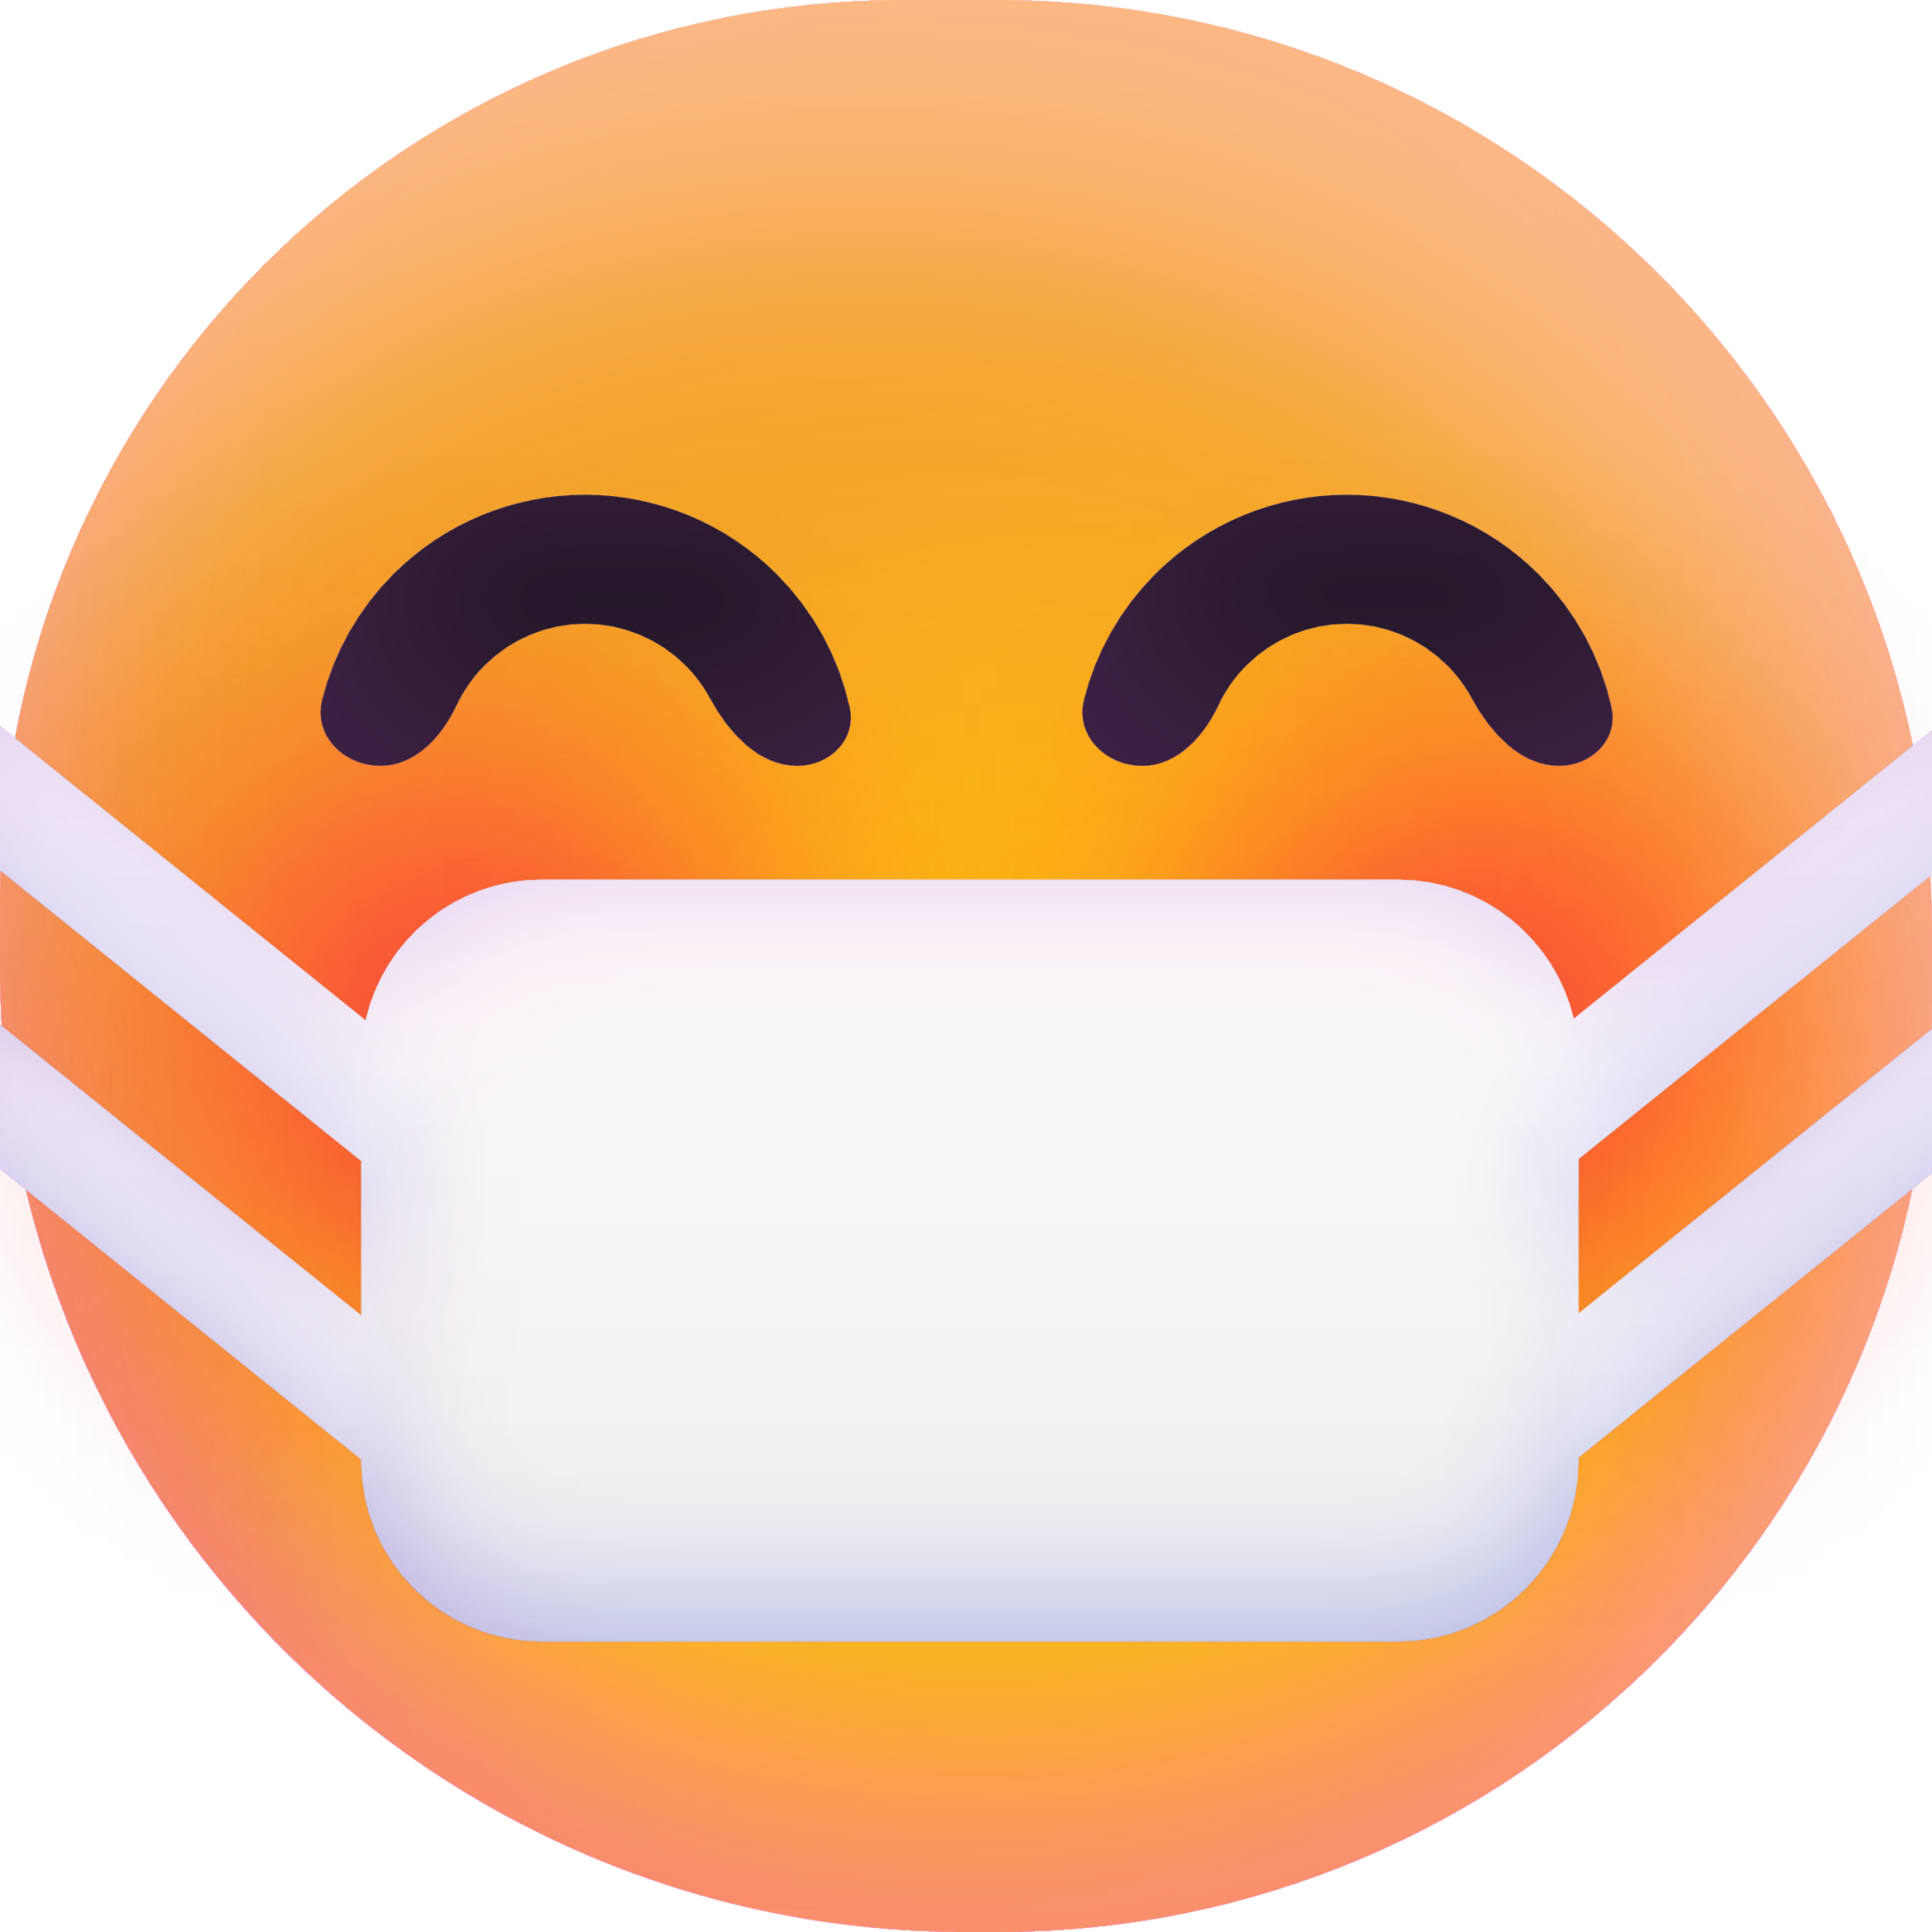 Face with Medical Mask emoji